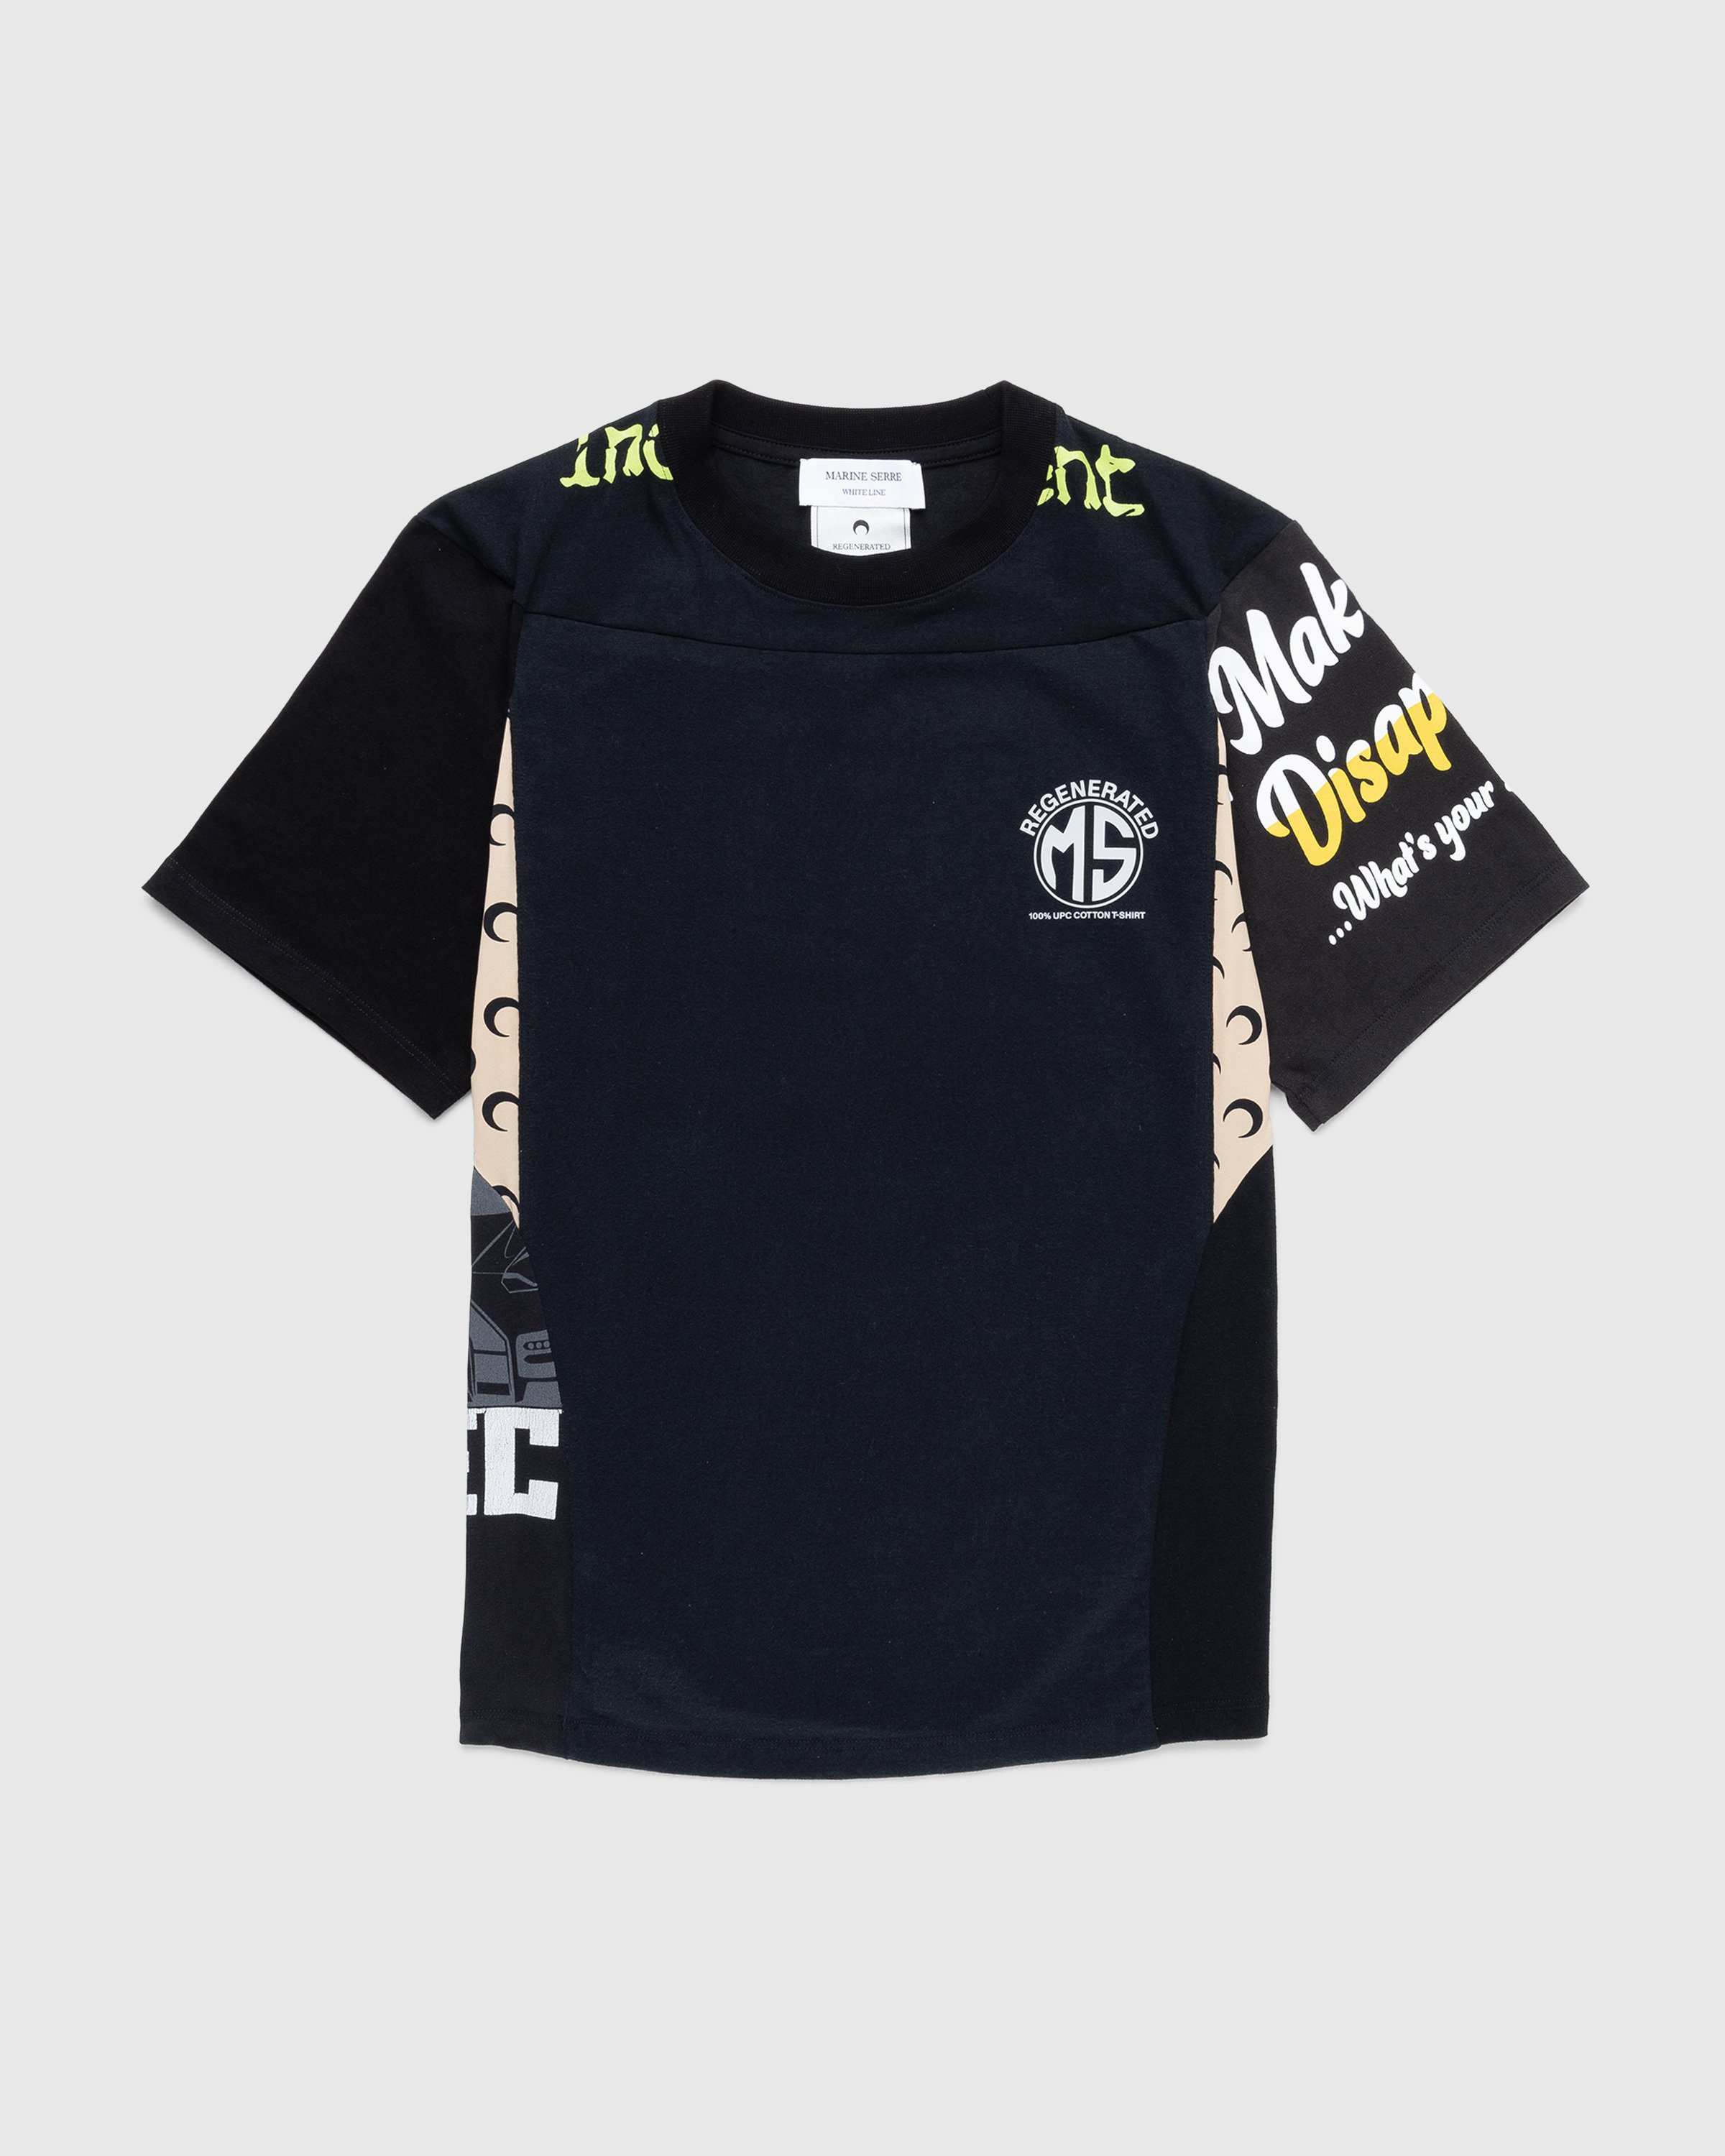 Marine Serre - Regenerated Graphic T-Shirt Black - Clothing - Black - Image 1